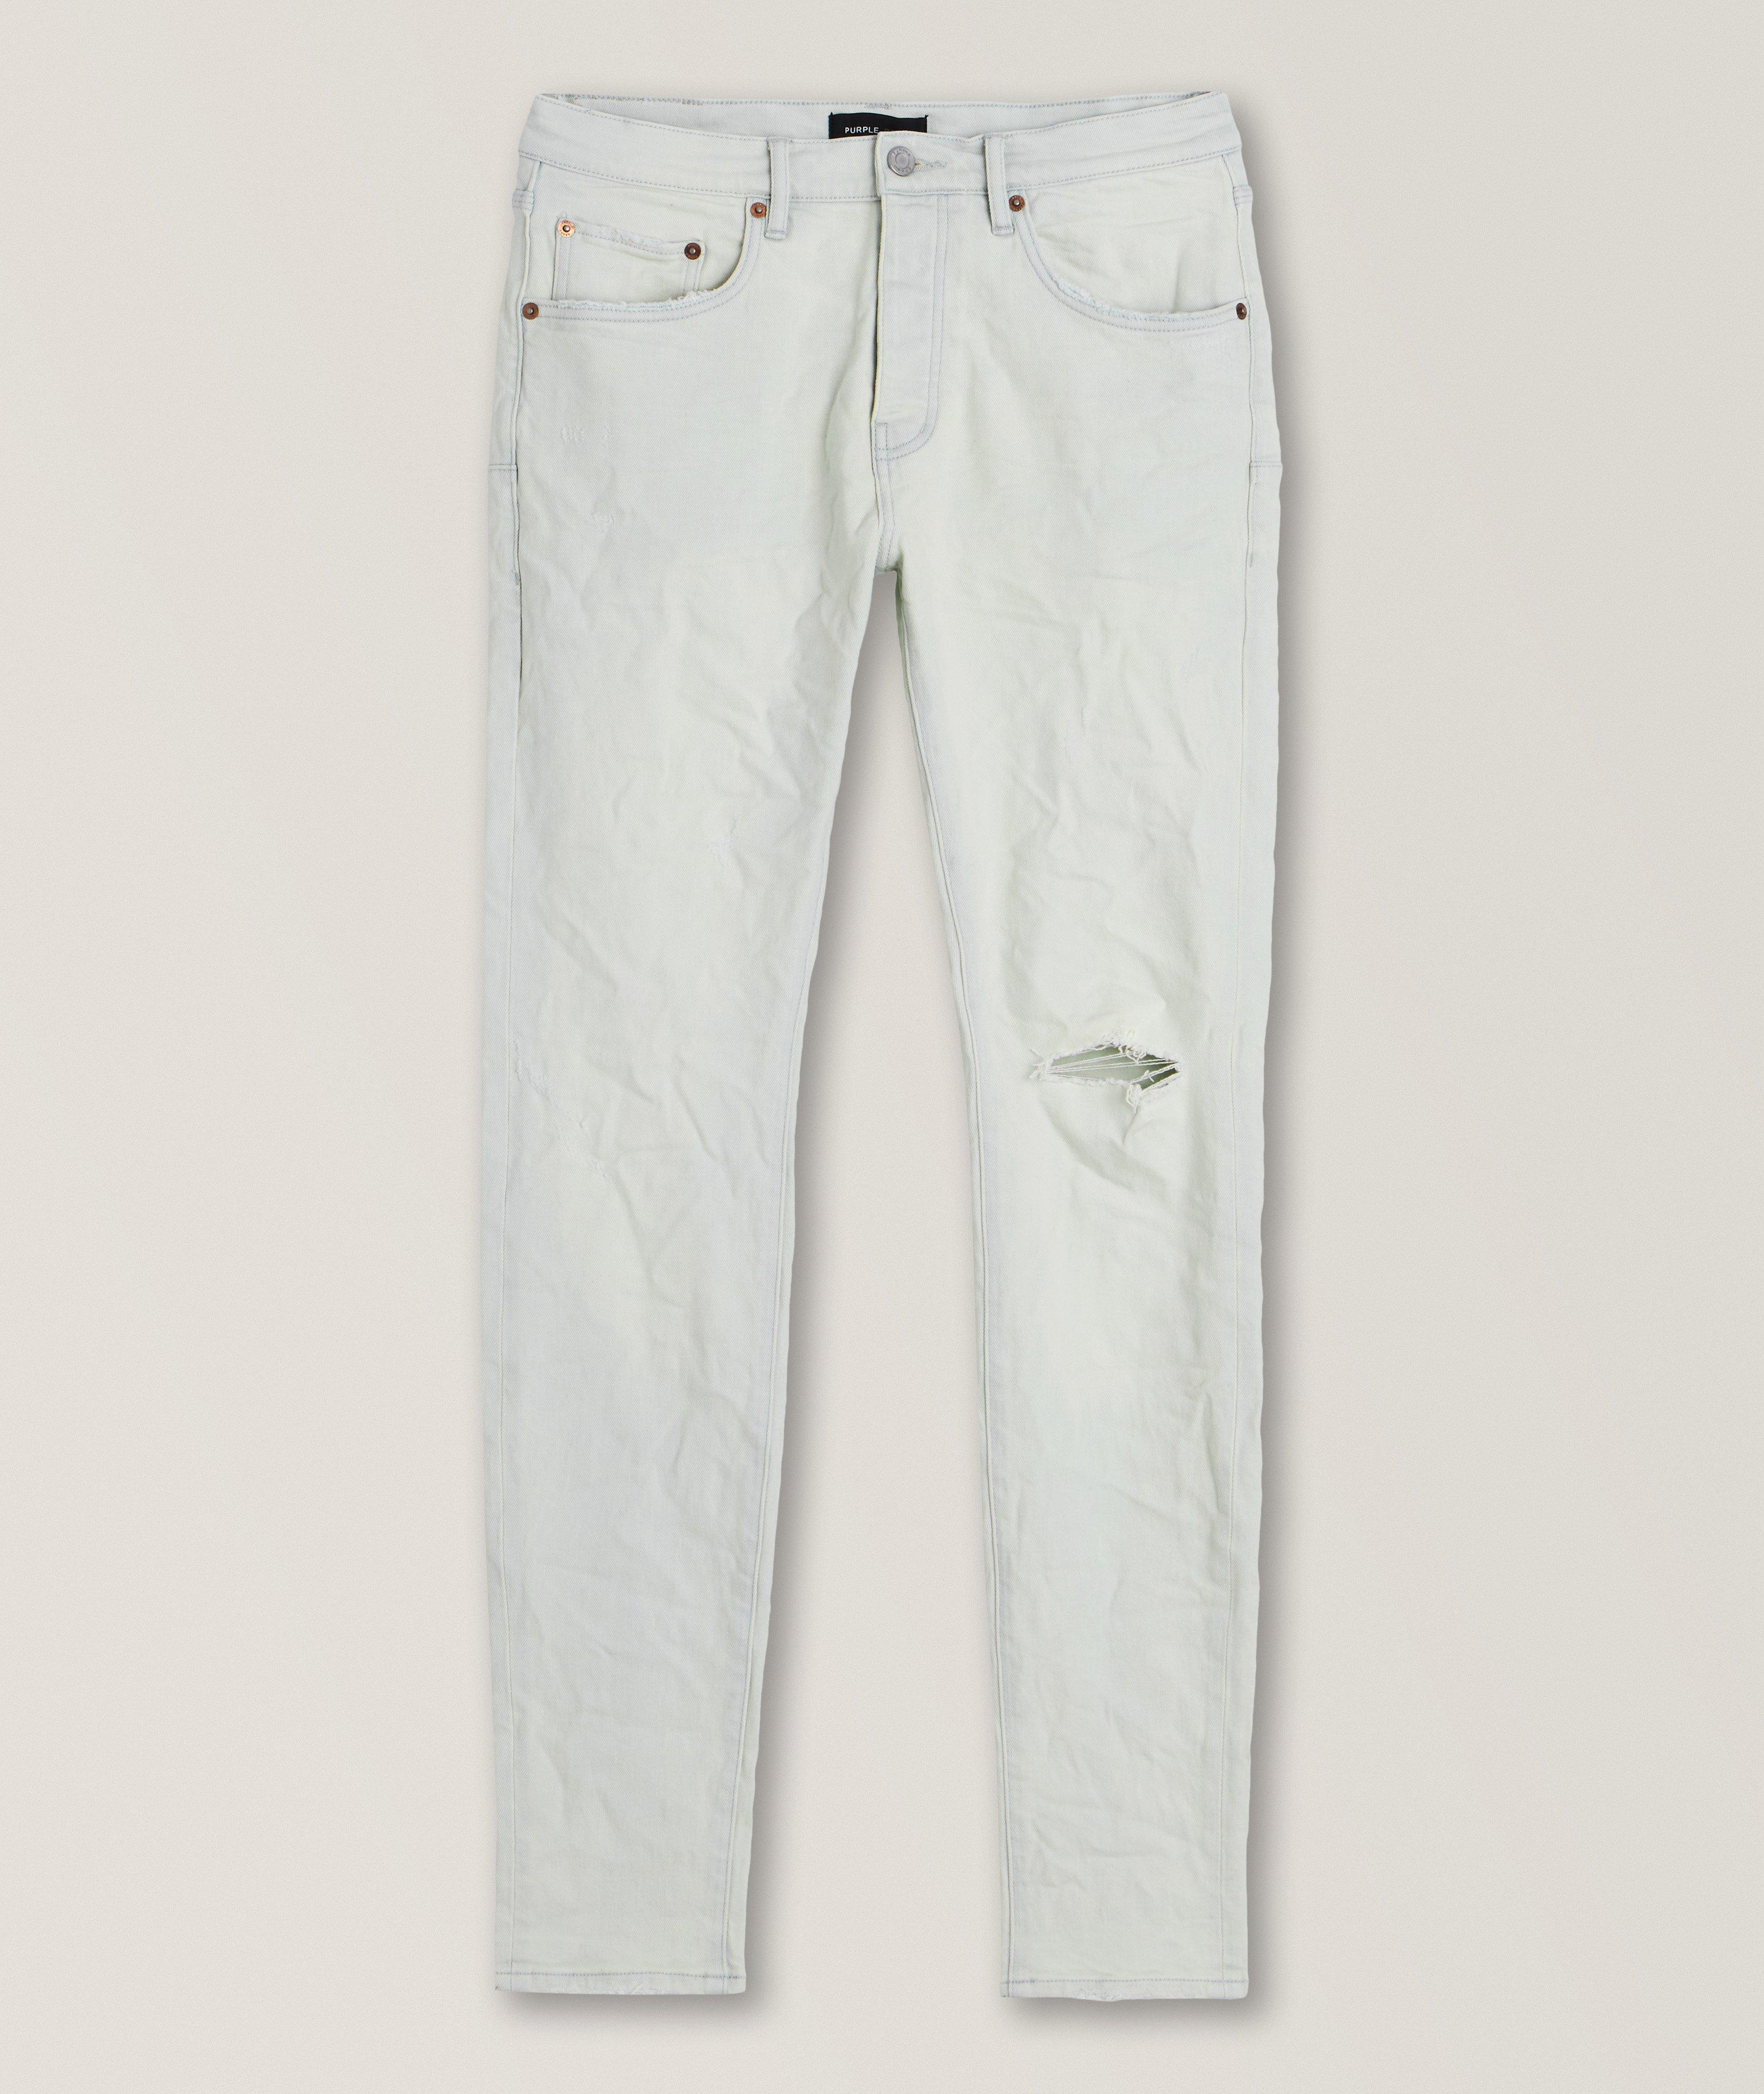 P001 Vintage Stretch Cotton Jeans  image 0